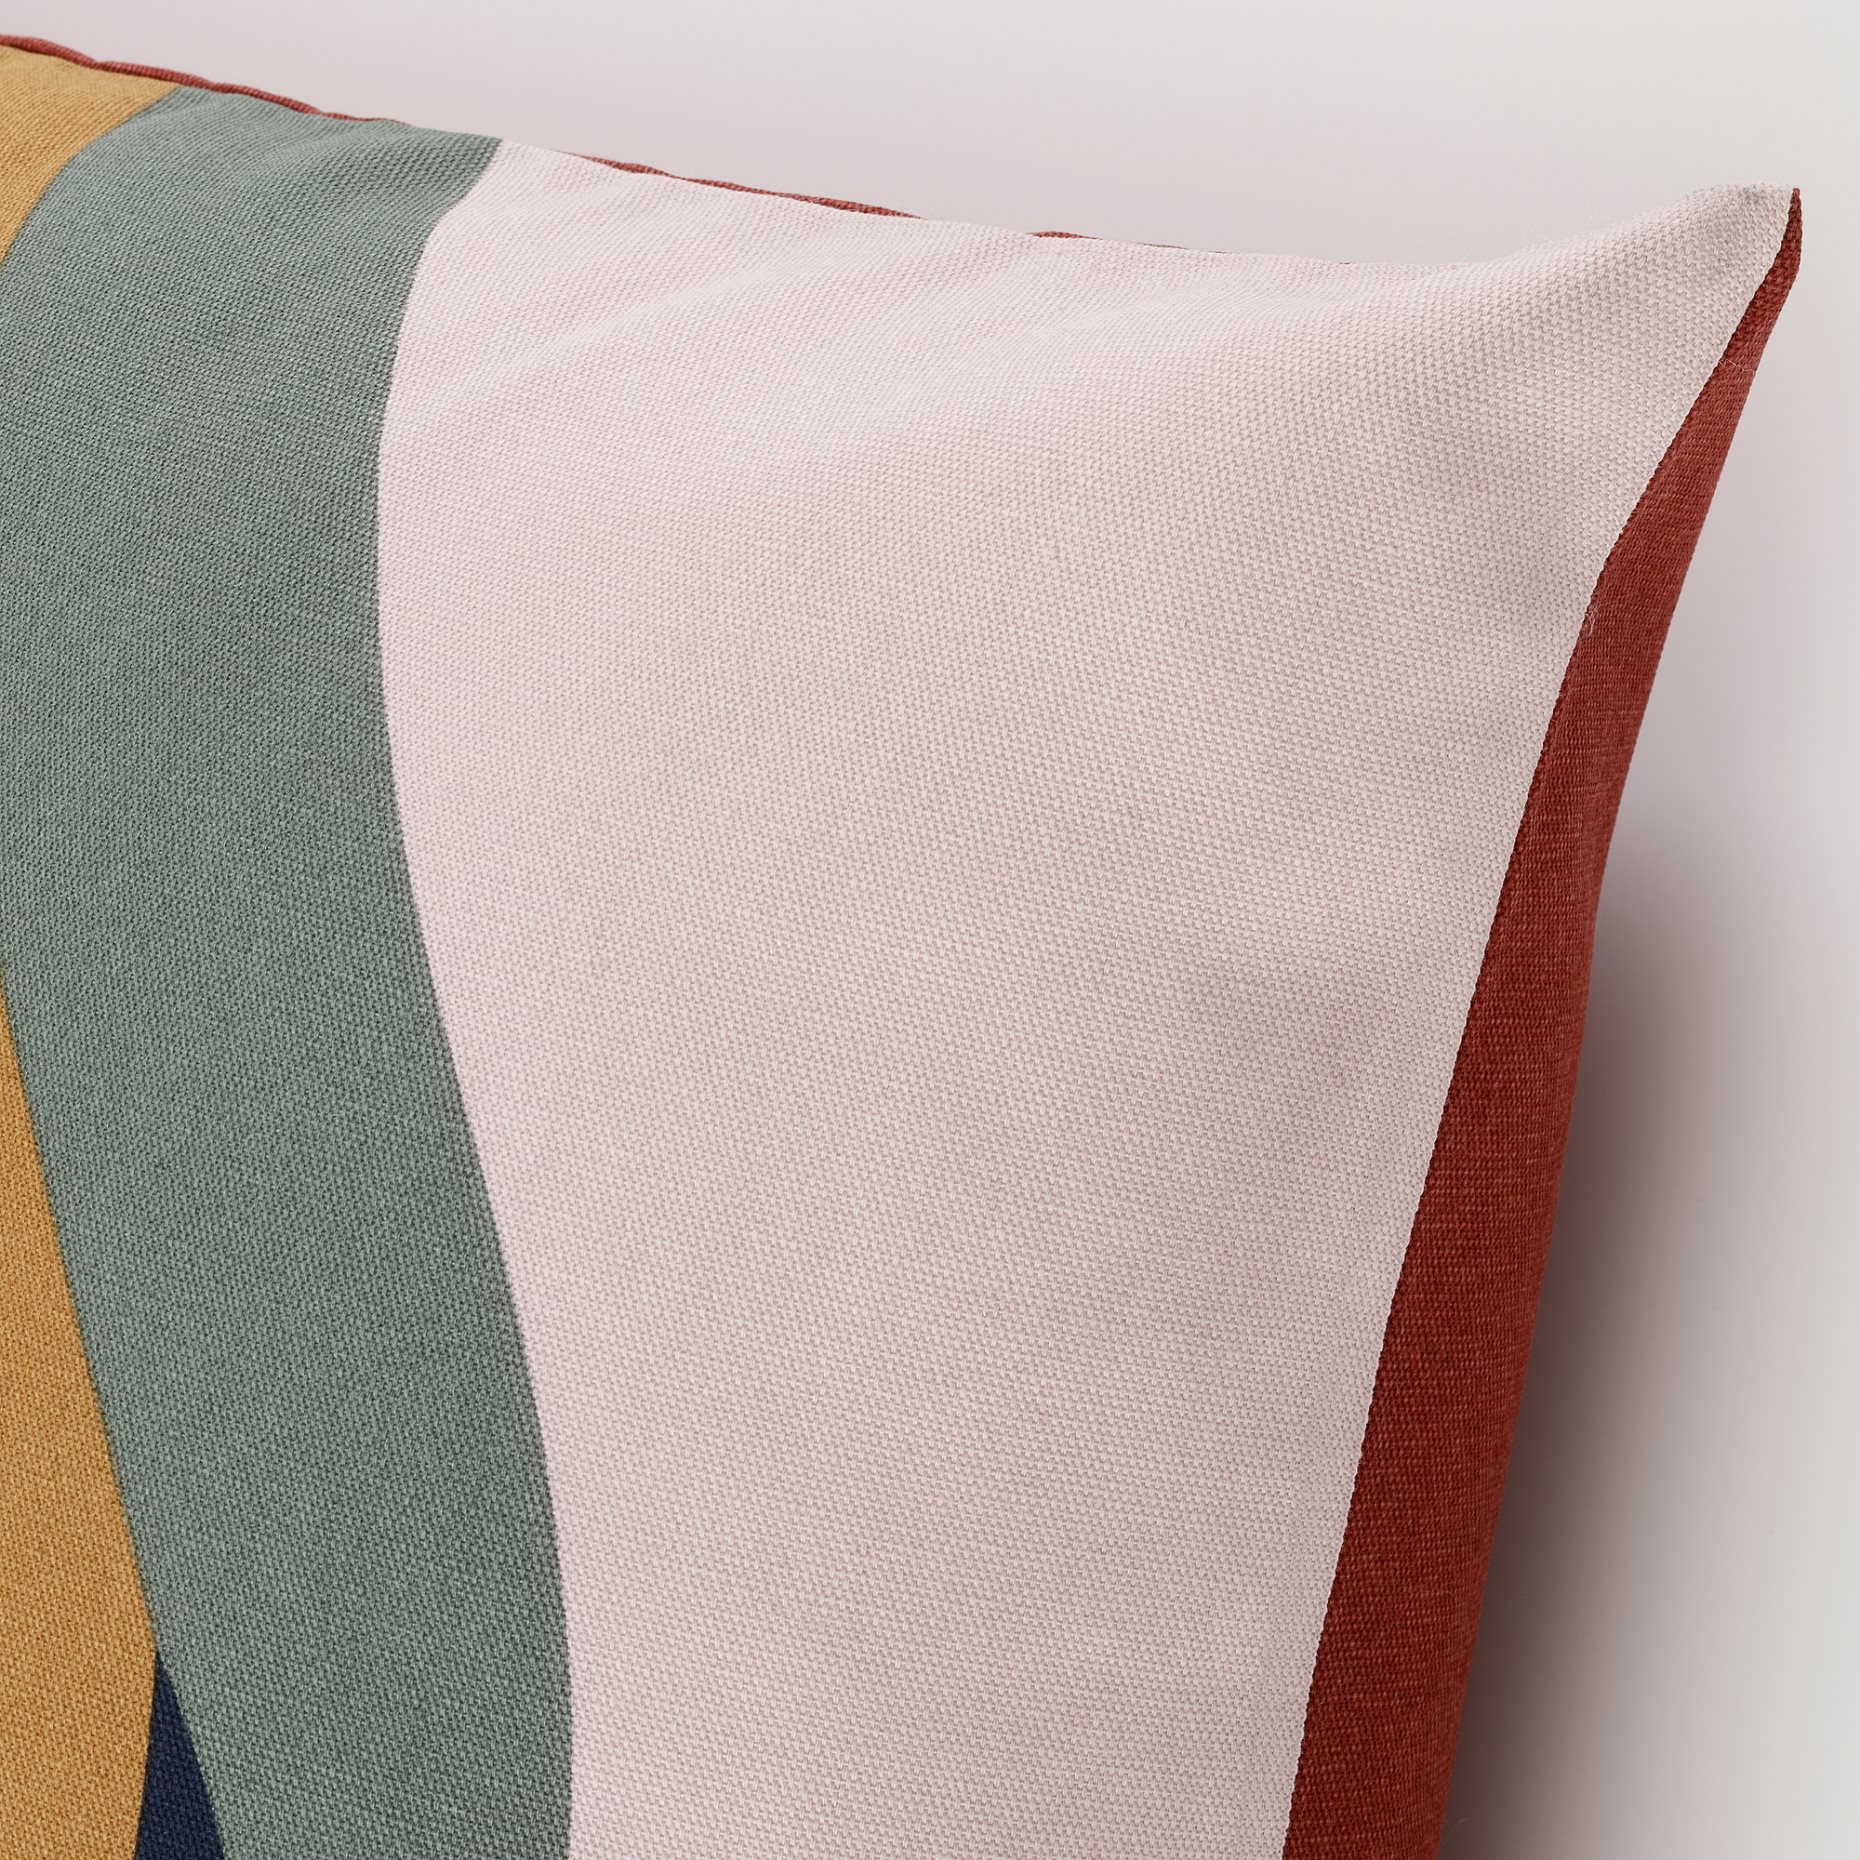 FISKMALLA, cushion cover, 50x50 cm, 805.654.48